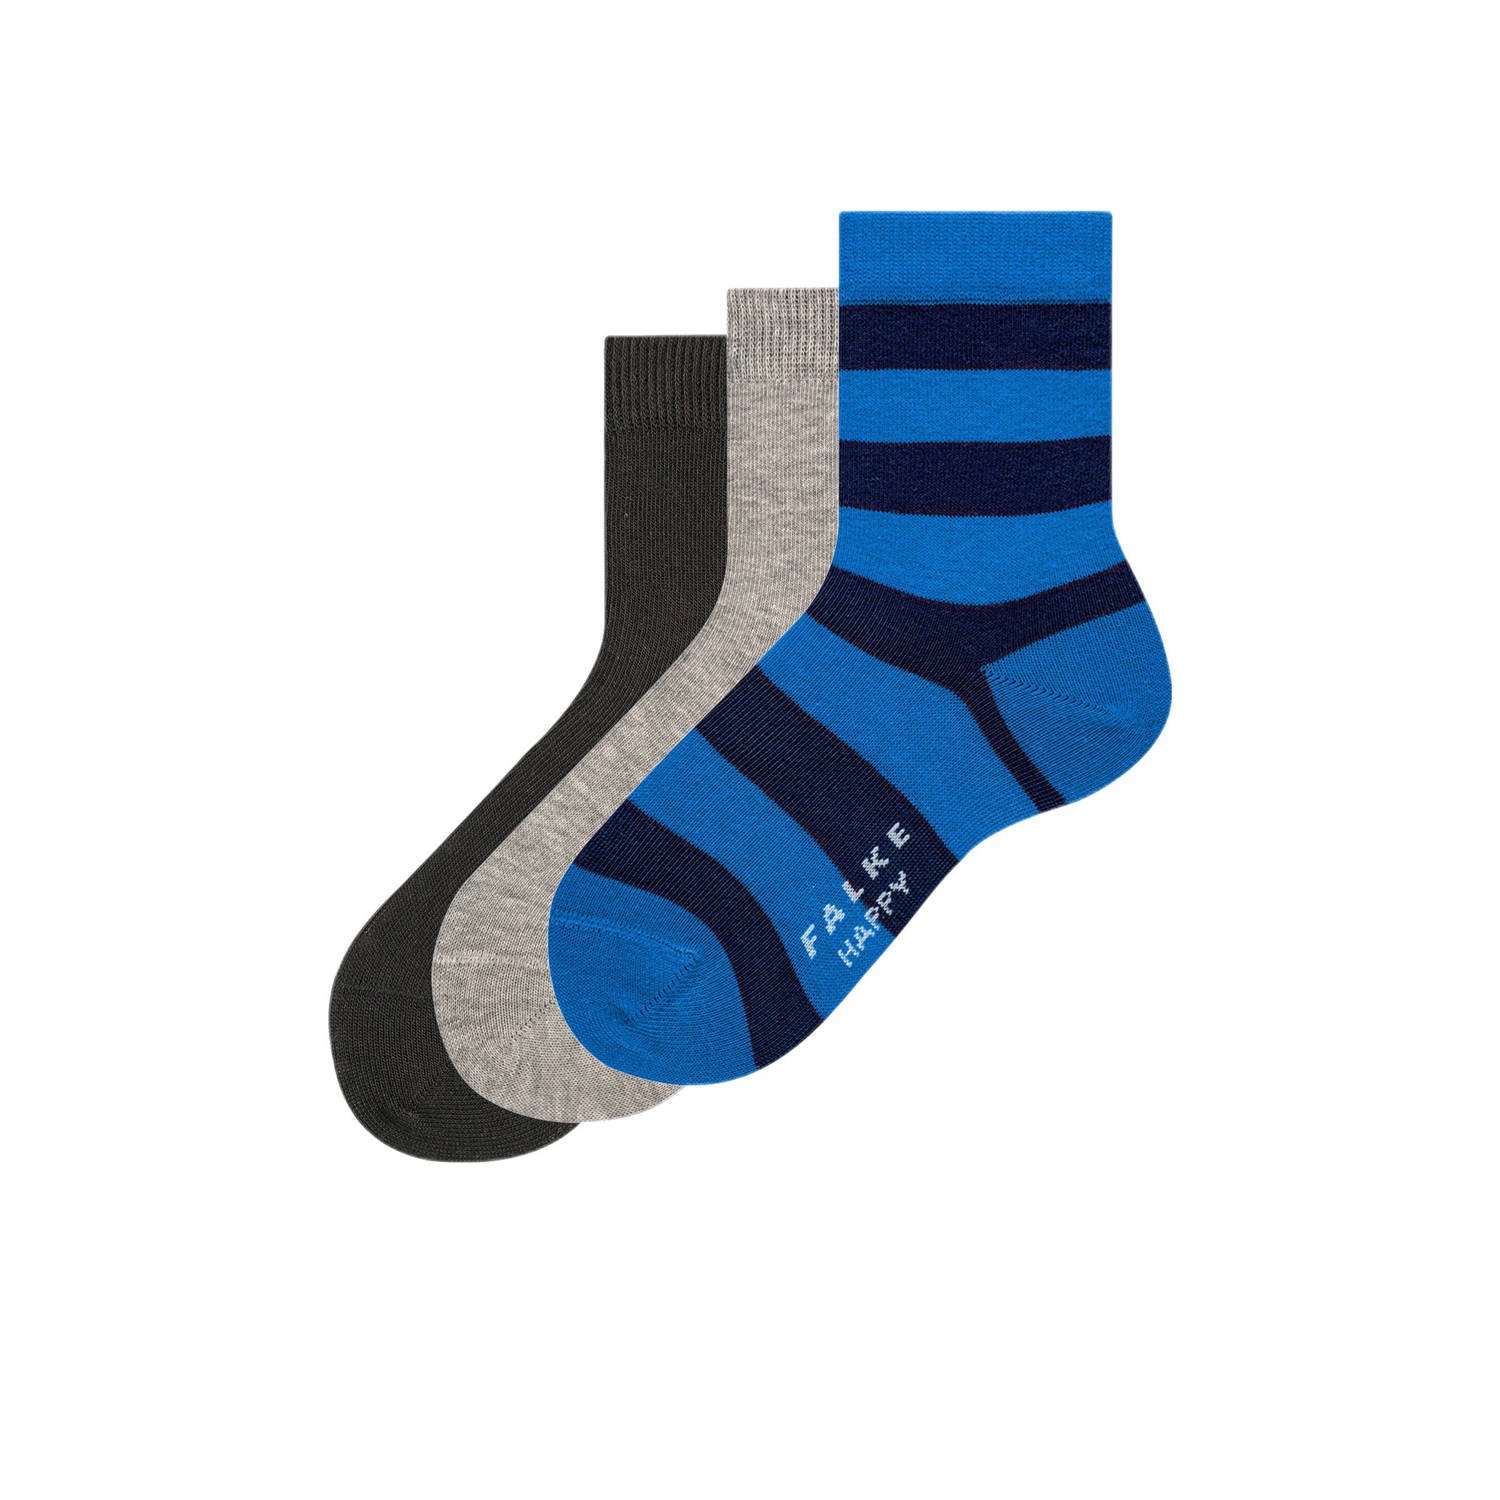 Falke sokken set van 3 blauw grijs Katoen All over print 27-30